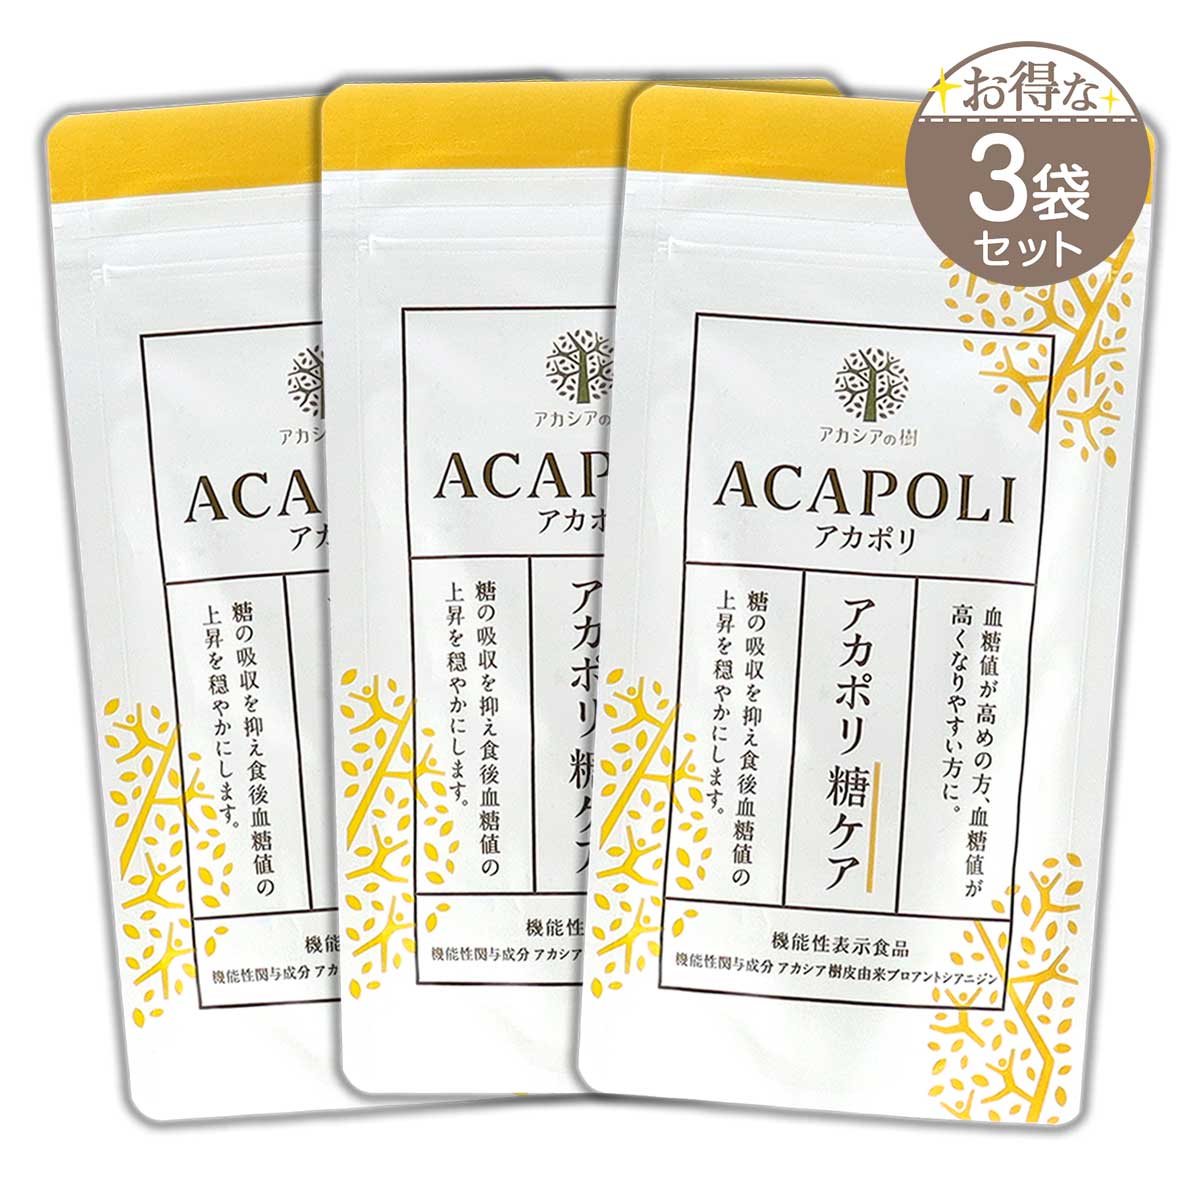 アカポリ糖ケア ACAPOLI 180粒 約1か月分 アカシアの樹 糖 血糖値